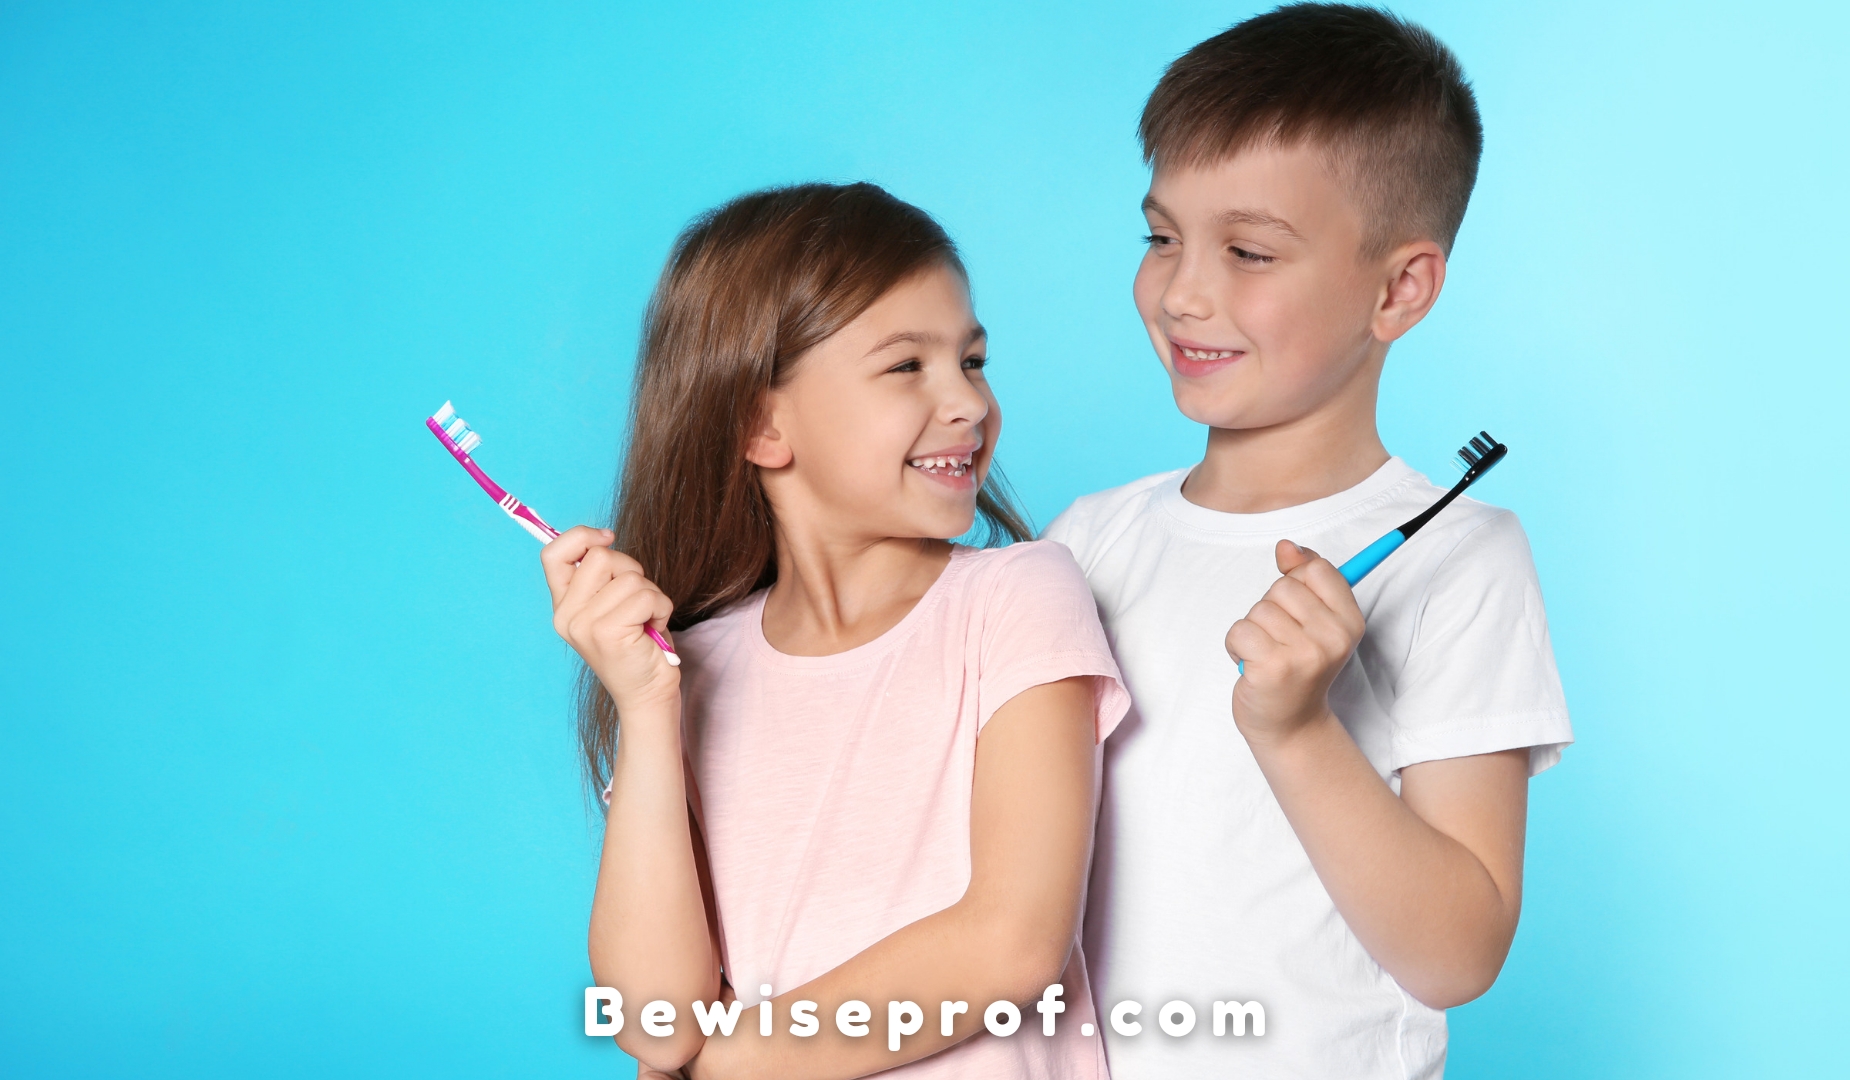 Promoting Proper Dental Care Habits among Children